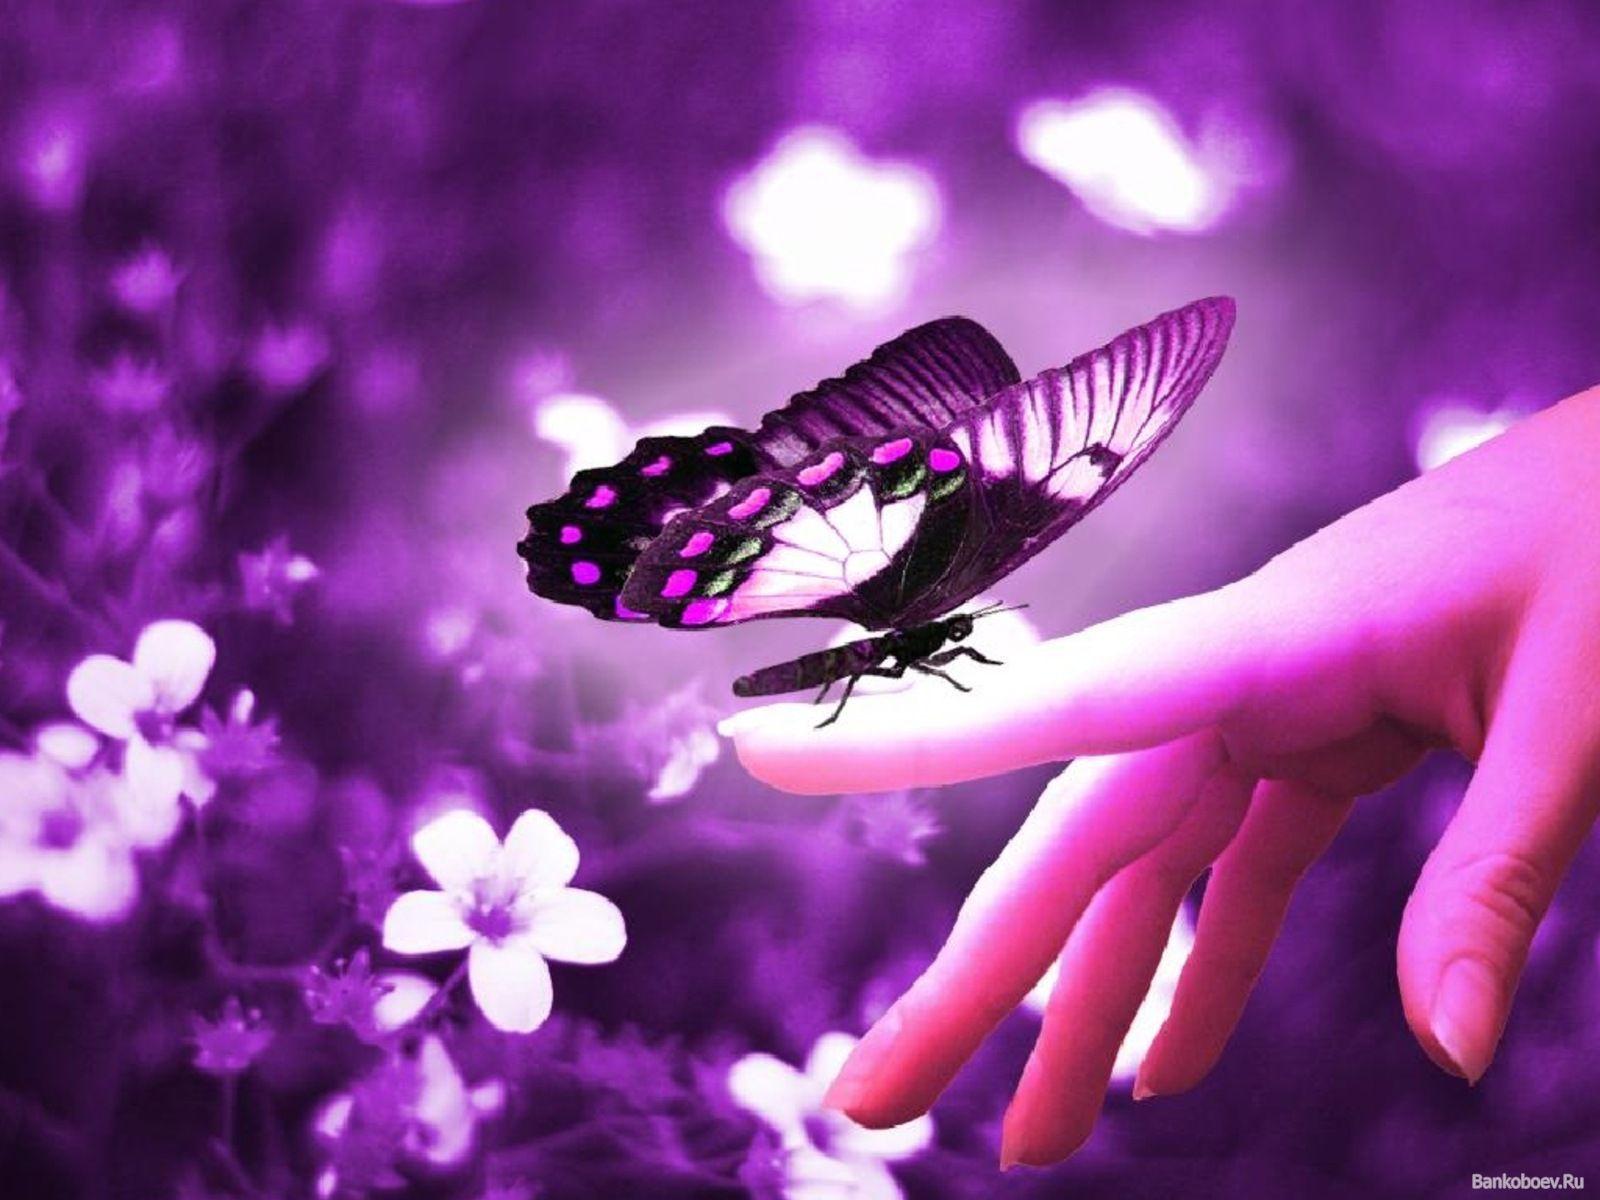 Cute Butterfly in Purple